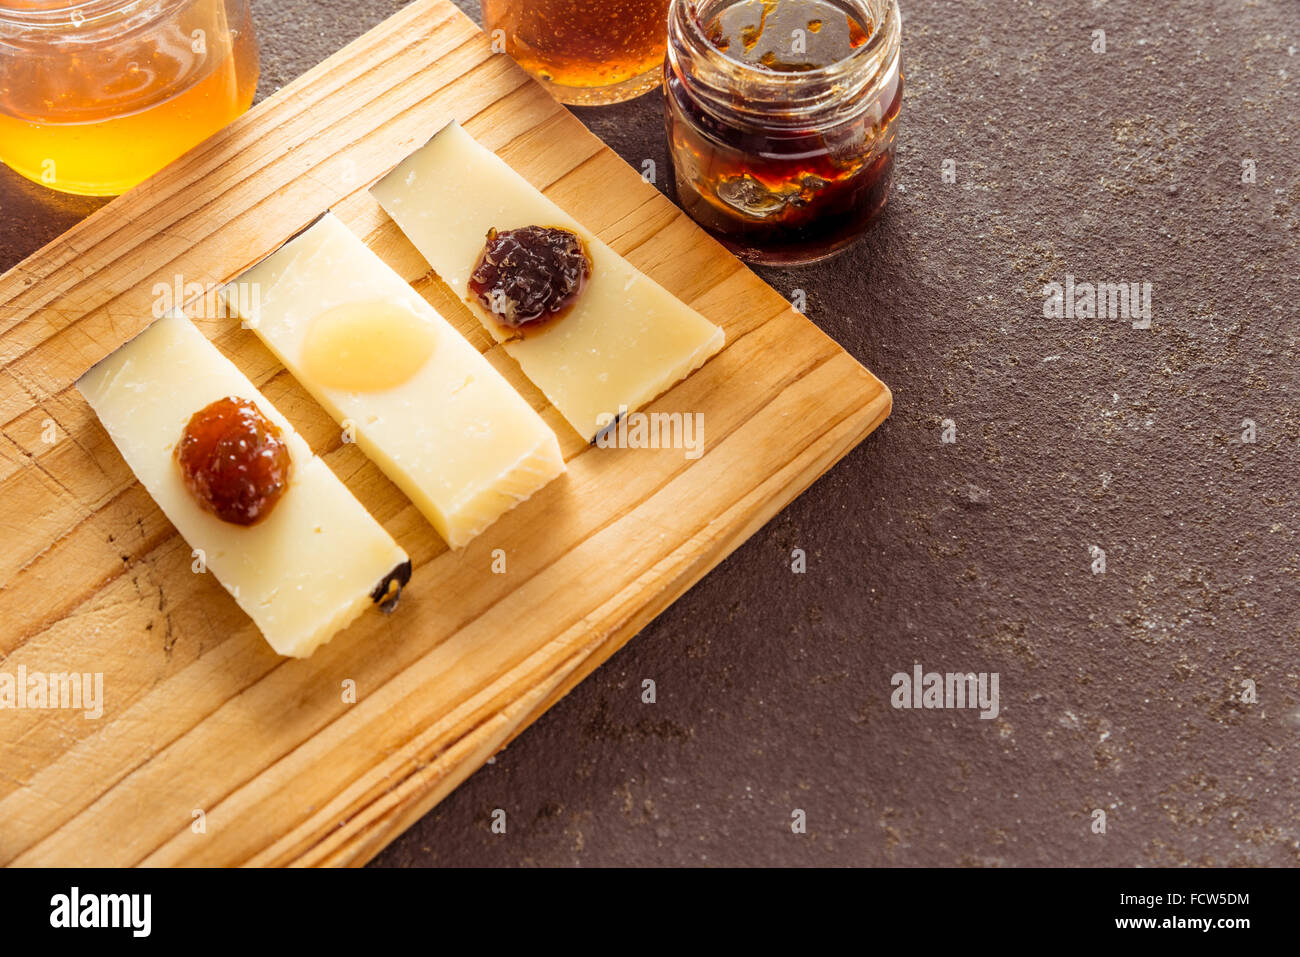 Une composition de tranches de fromage pecorino italien avec des confitures de différentes saveurs sur une planche à découper en bois Banque D'Images